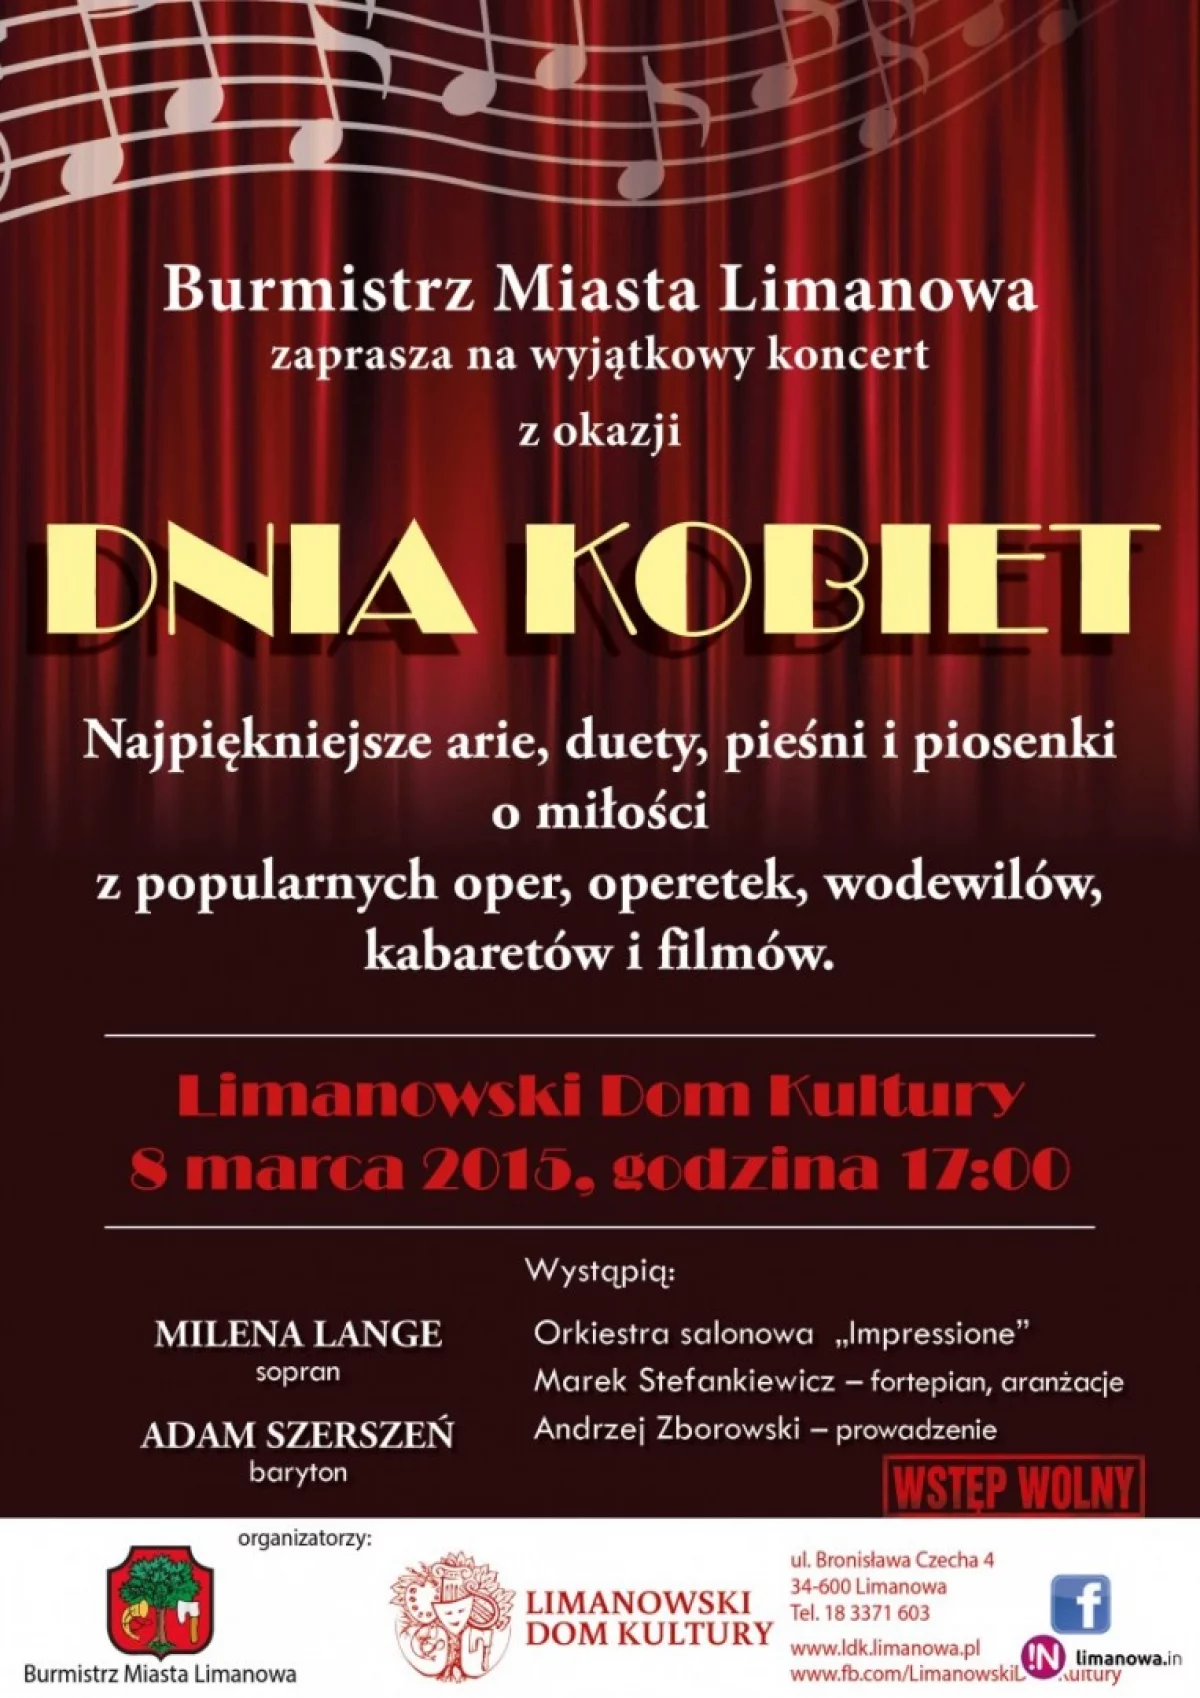 Burmistrz Miasta Limanowa zaprasza na wyjątkowy koncert z okazji Dnia Kobiet w LDK